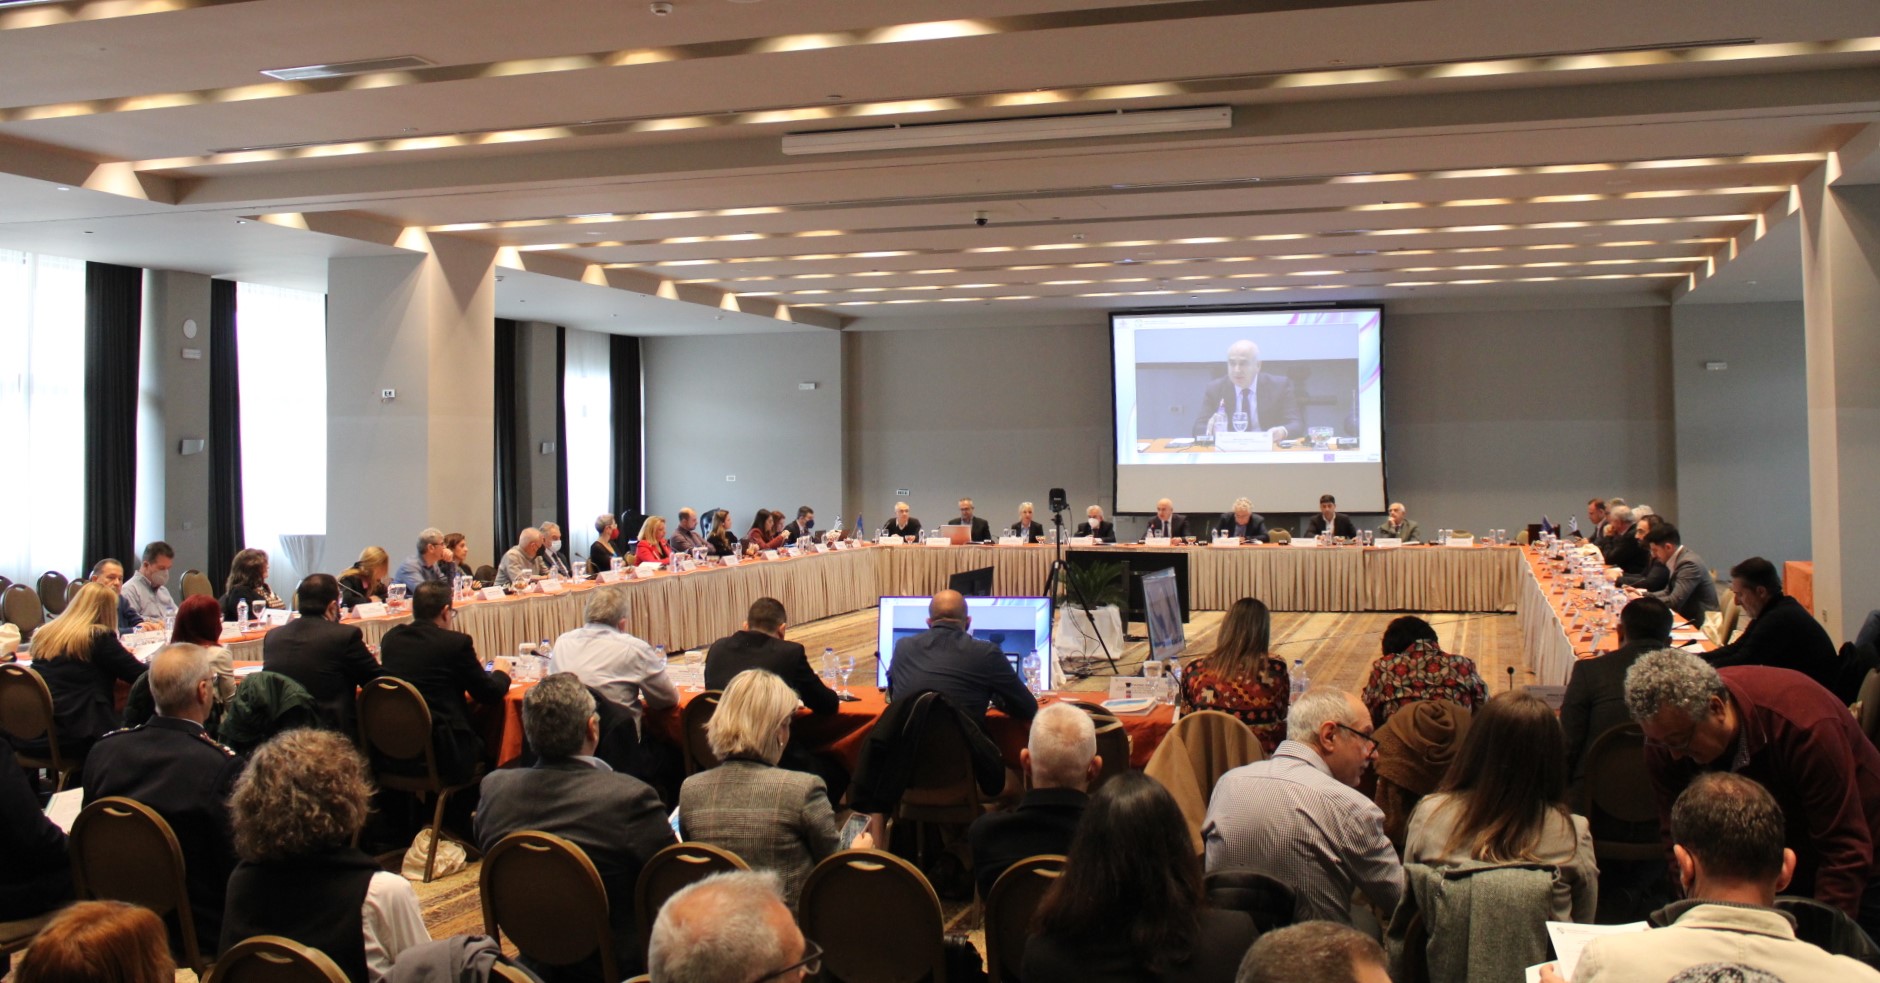 Πραγματοποιήθηκαν με επιτυχία στην Αλεξανδρούπολη η 1η συνεδρίαση της Επιτροπής Παρακολούθησης για την έναρξη του νέου ΕΣΠΑ της Περιφέρειας ΑΜΘ 2021-2027 και η 6η για την πορεία ολοκλήρωσης του τρέχοντος ΕΣΠΑ 2014-2020